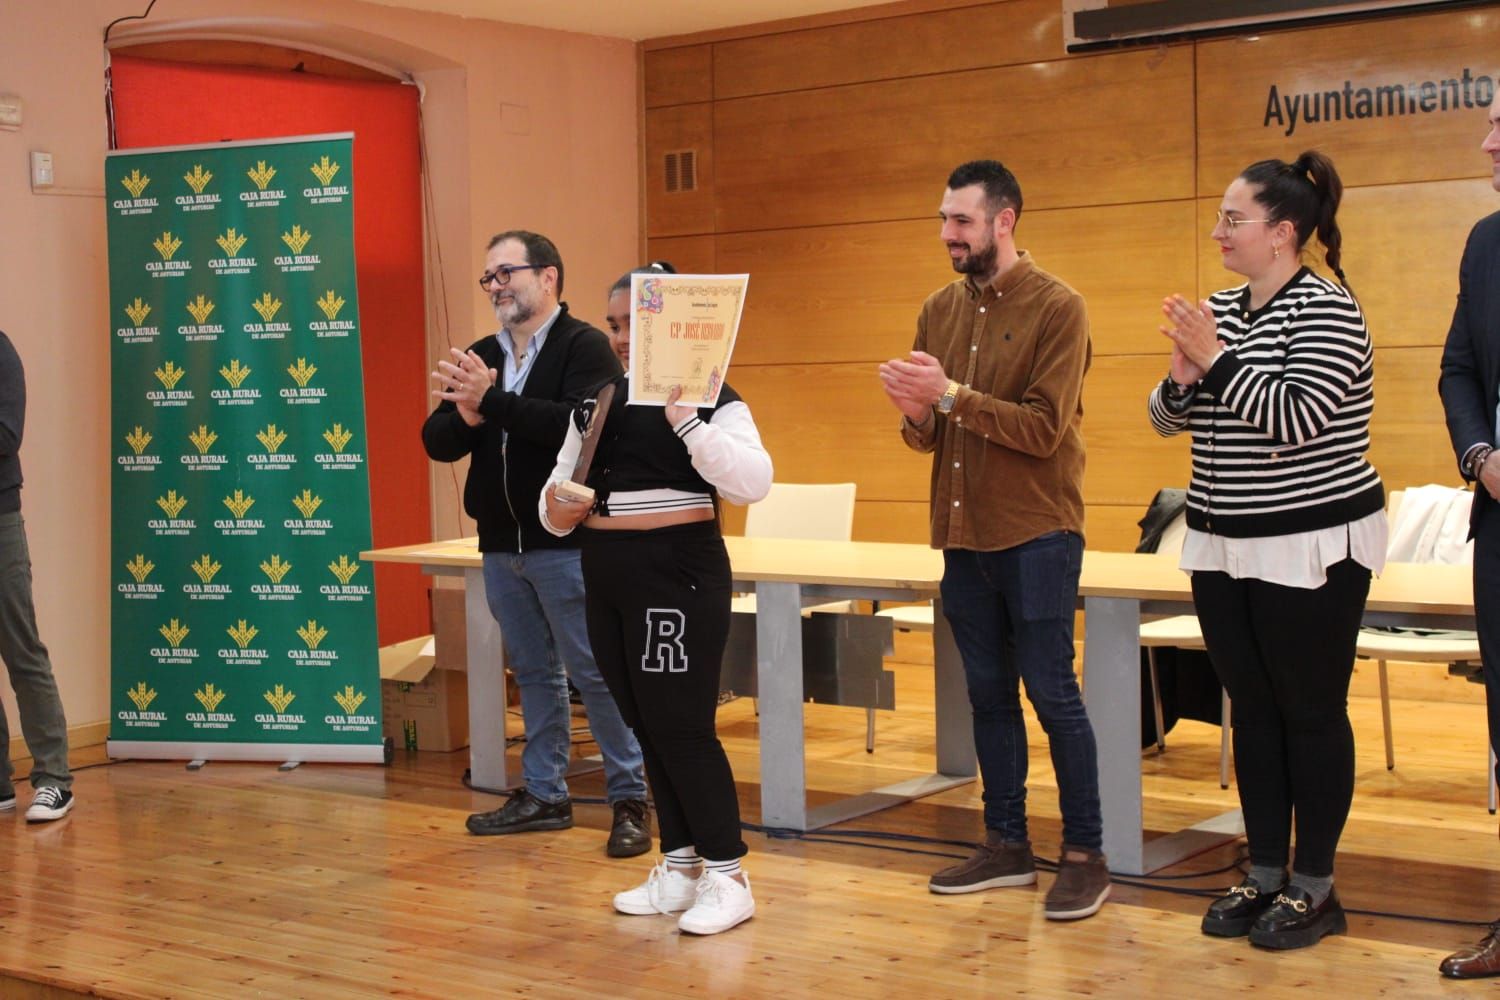 Así fue la entrega de premios del concurso de Huevos Pintos en Sama de Langreo